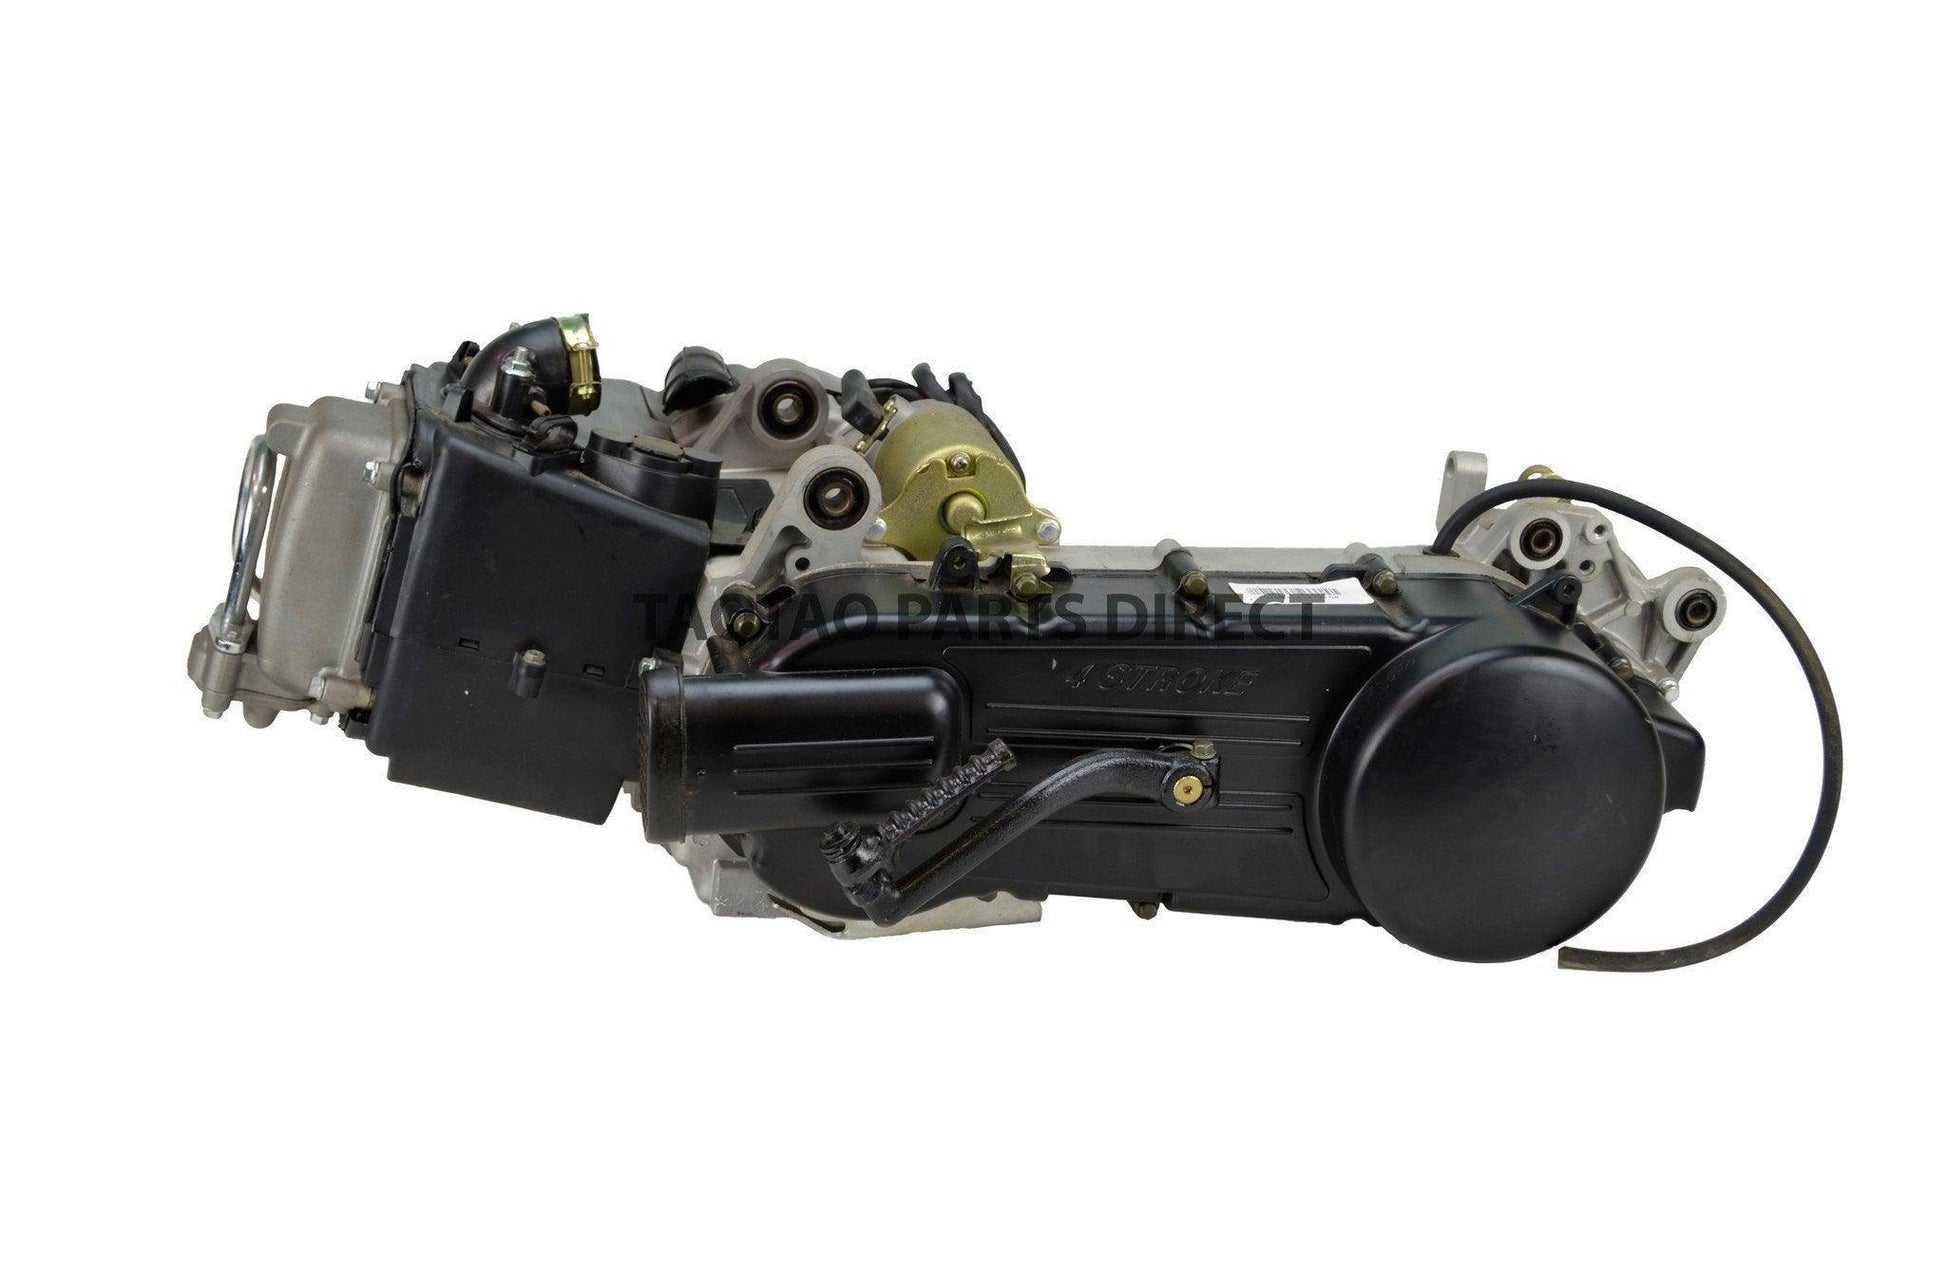 150cc GY6 Long Case Engine - TaoTao Parts Direct